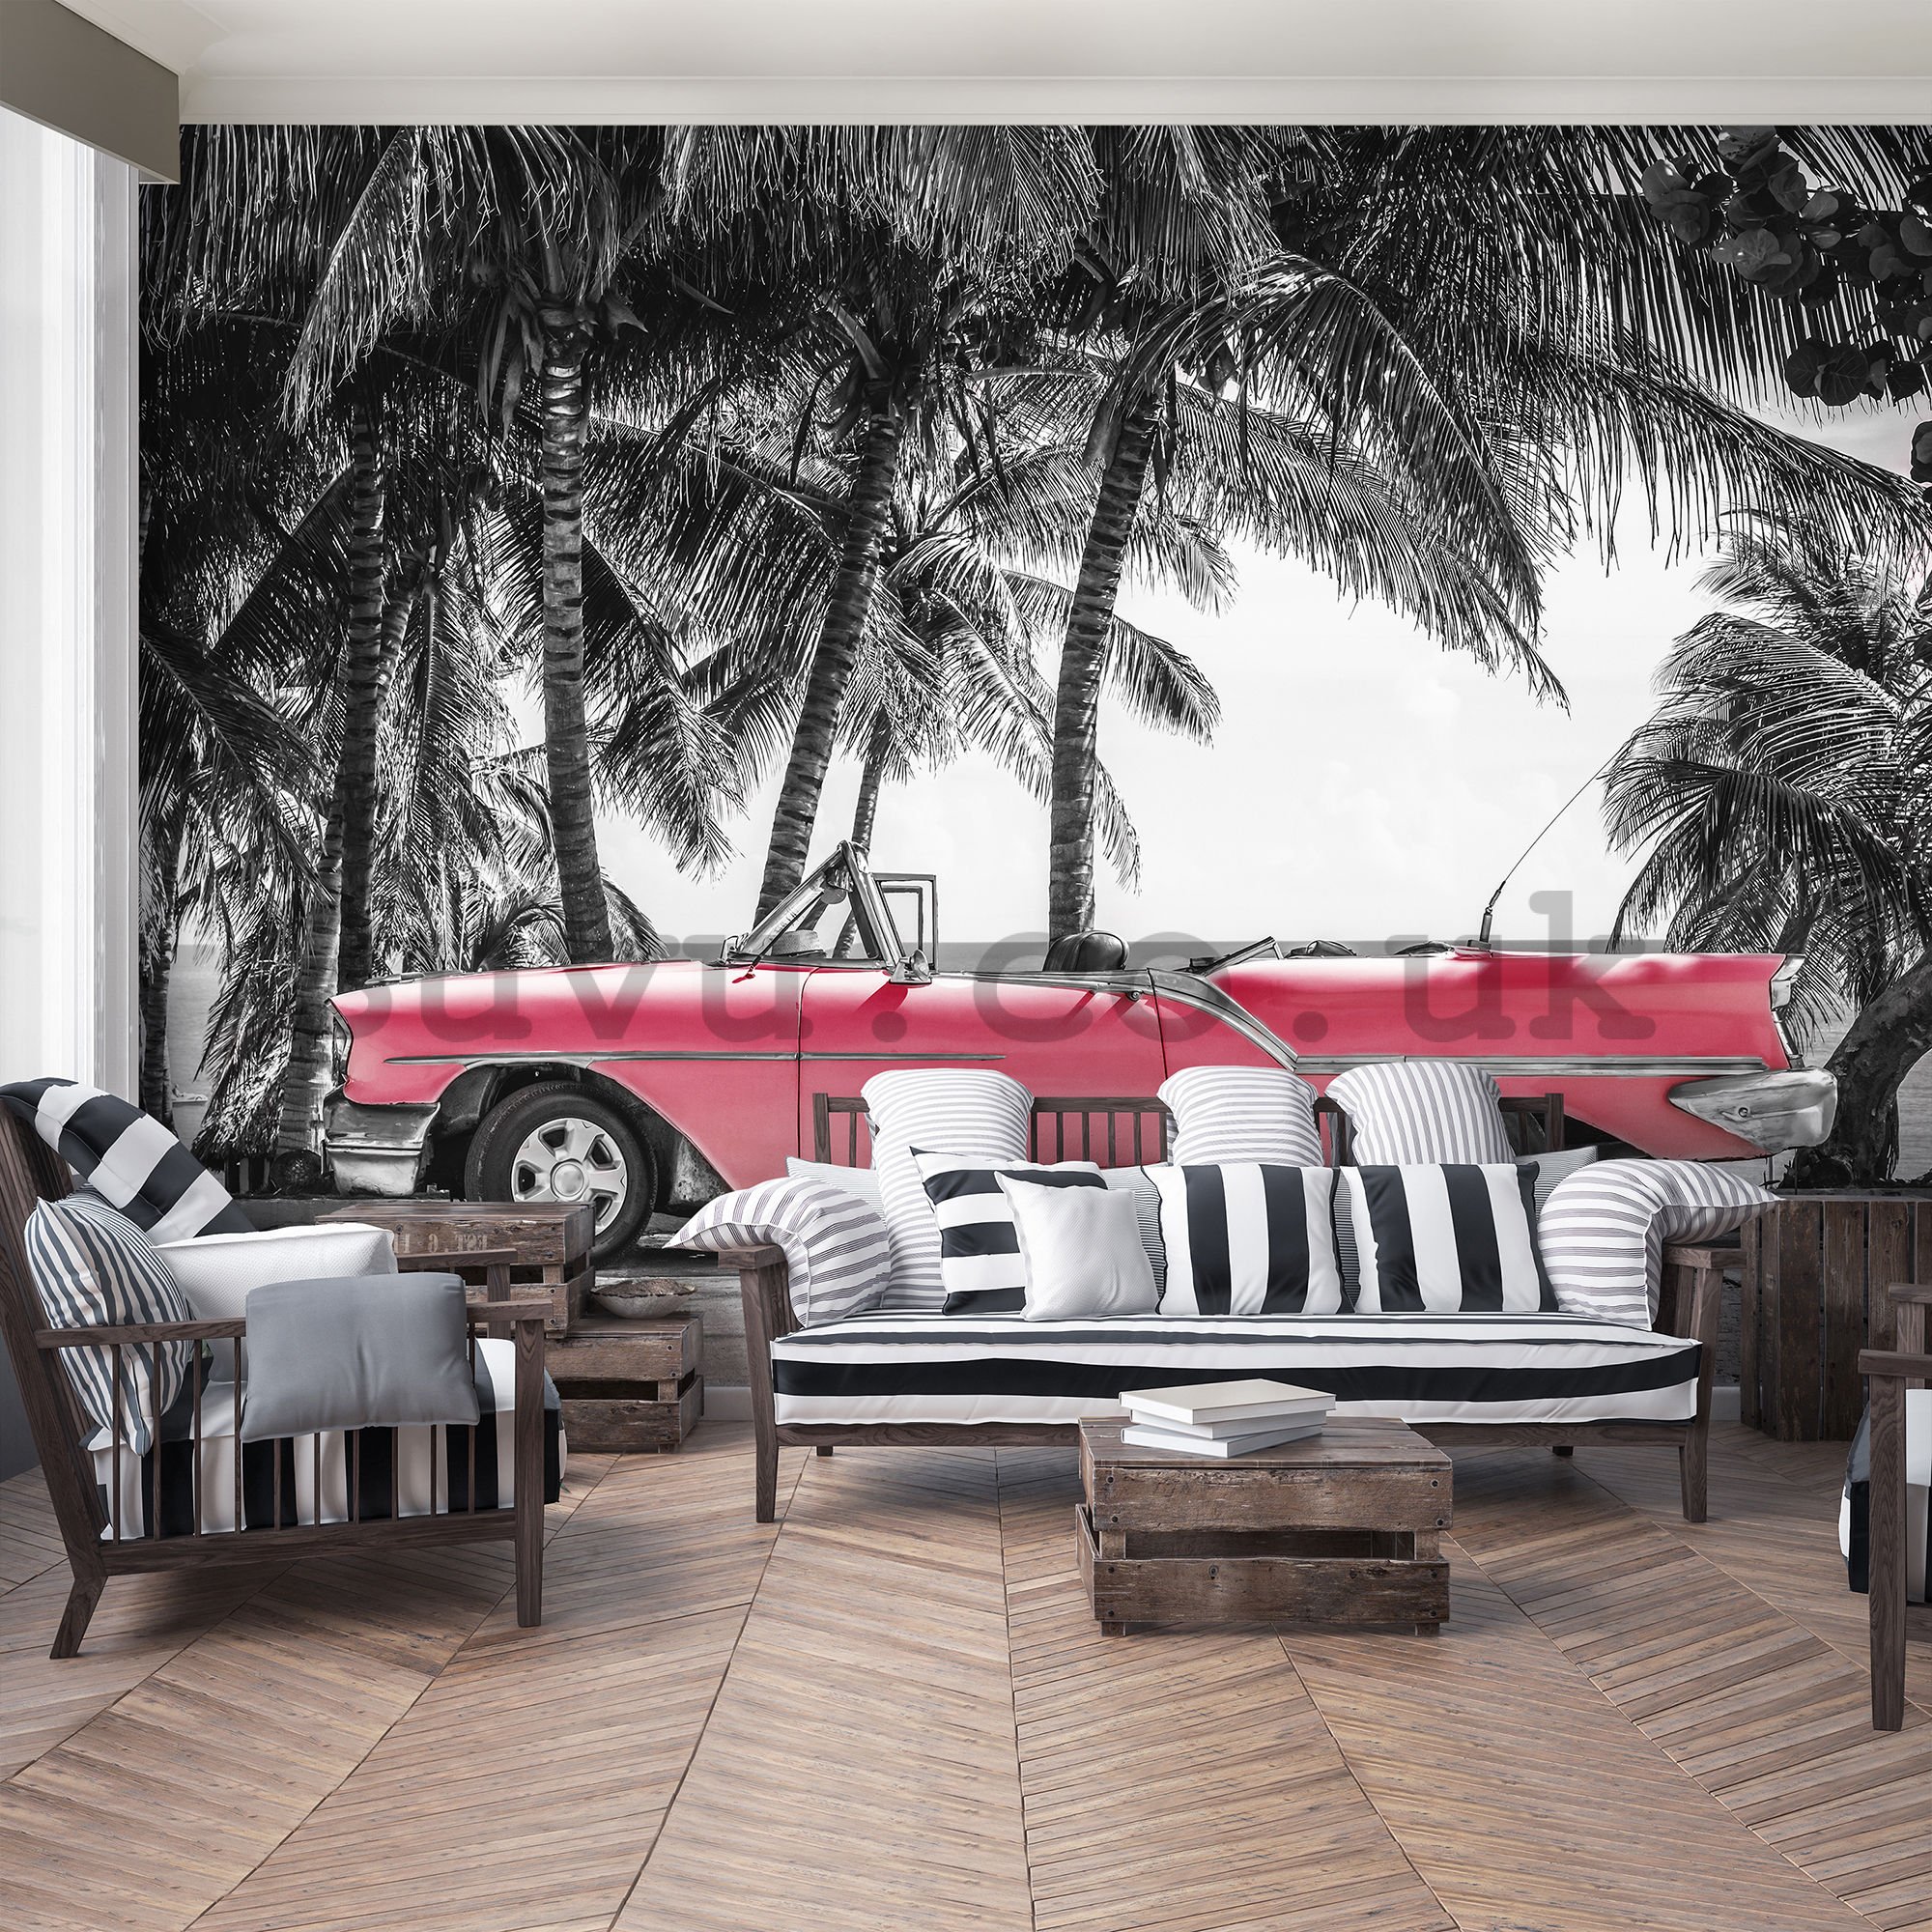 Wall mural vlies: Cuba red car - 254x368 cm